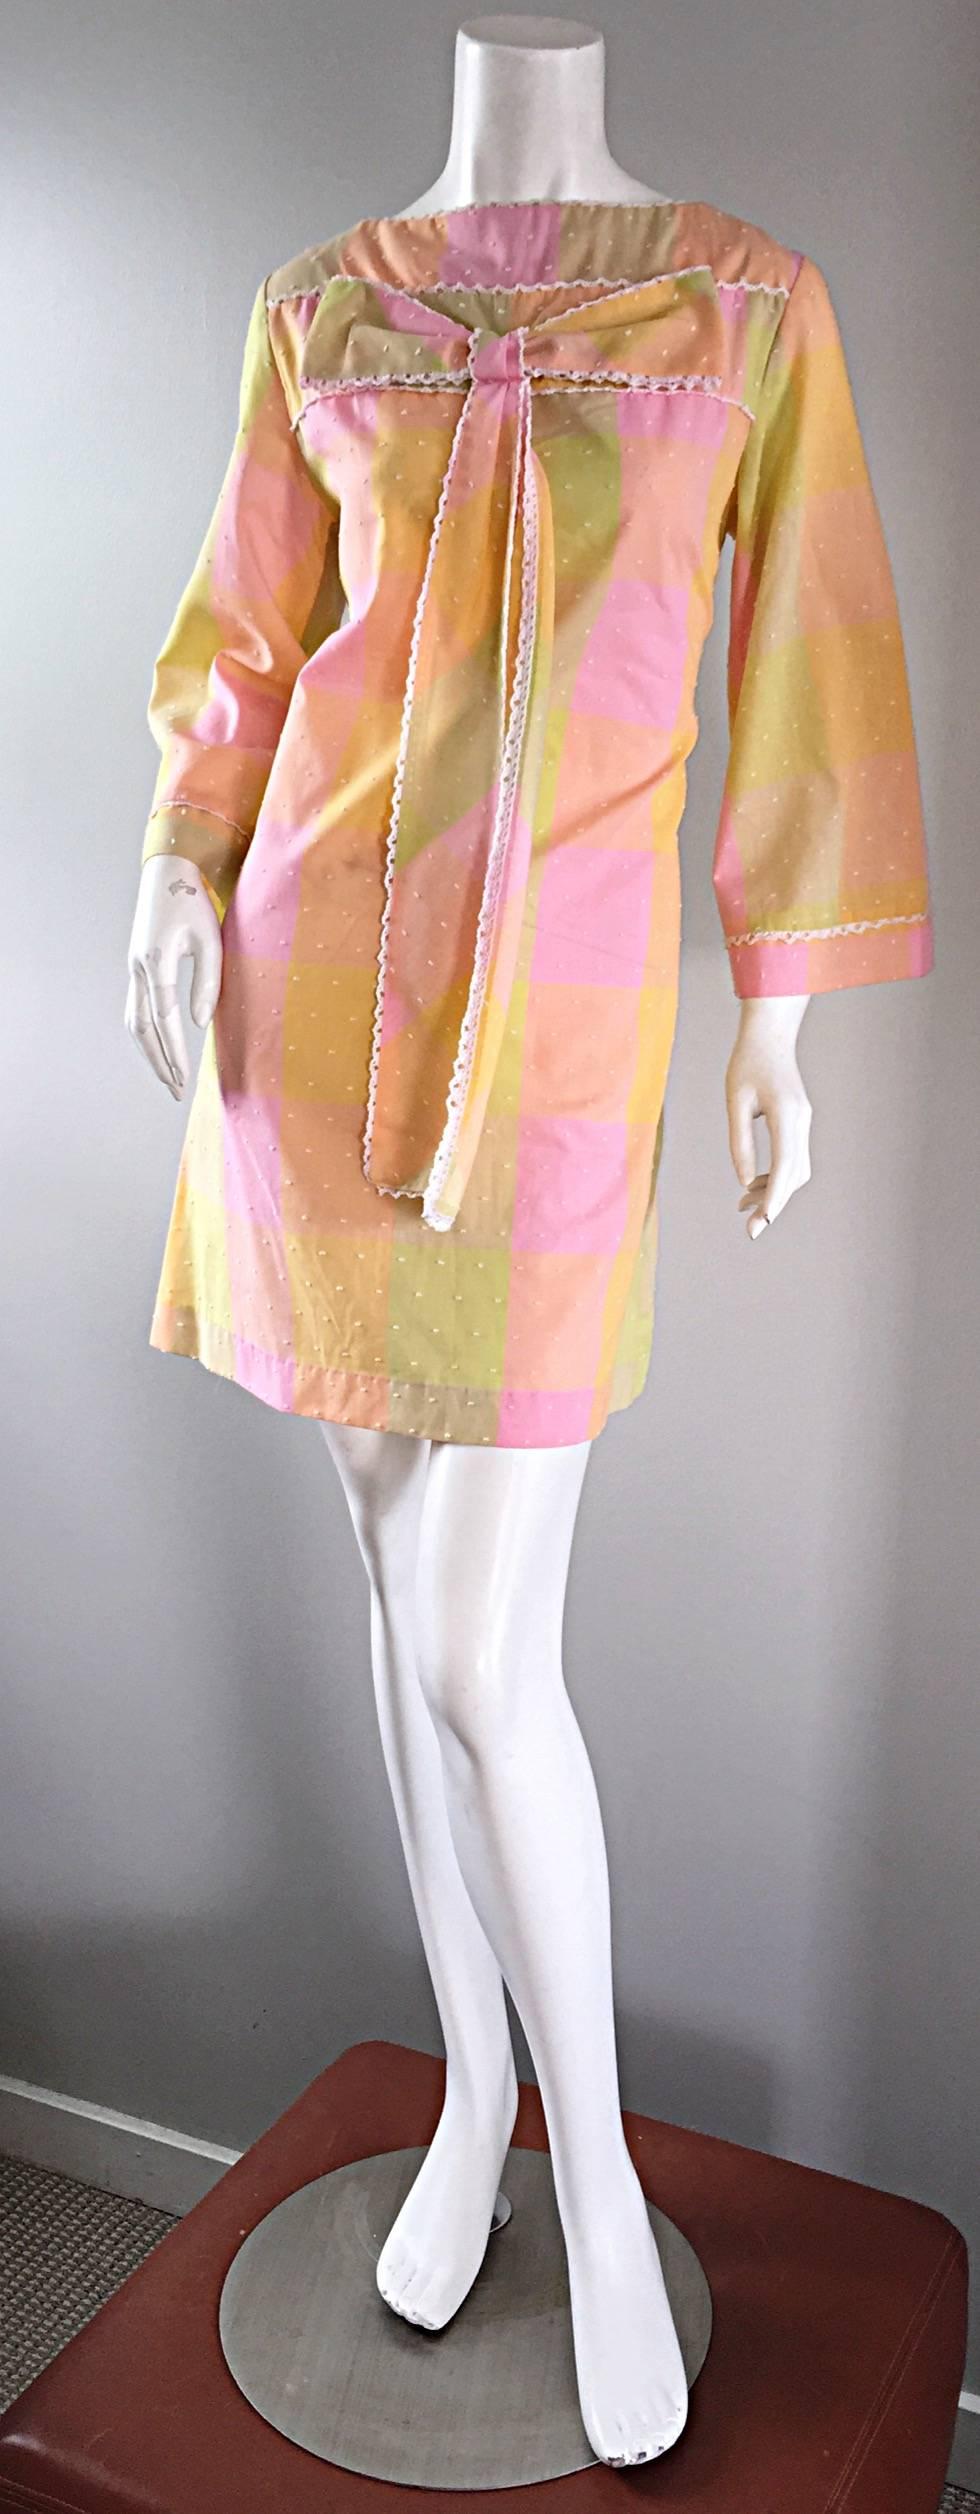 Adorable robe vintage des années 1960 en coton doux avec nœud ! Plaid surdimensionné aux couleurs pastel du rose, du jaune, du vert citron et de l'orange, avec des 